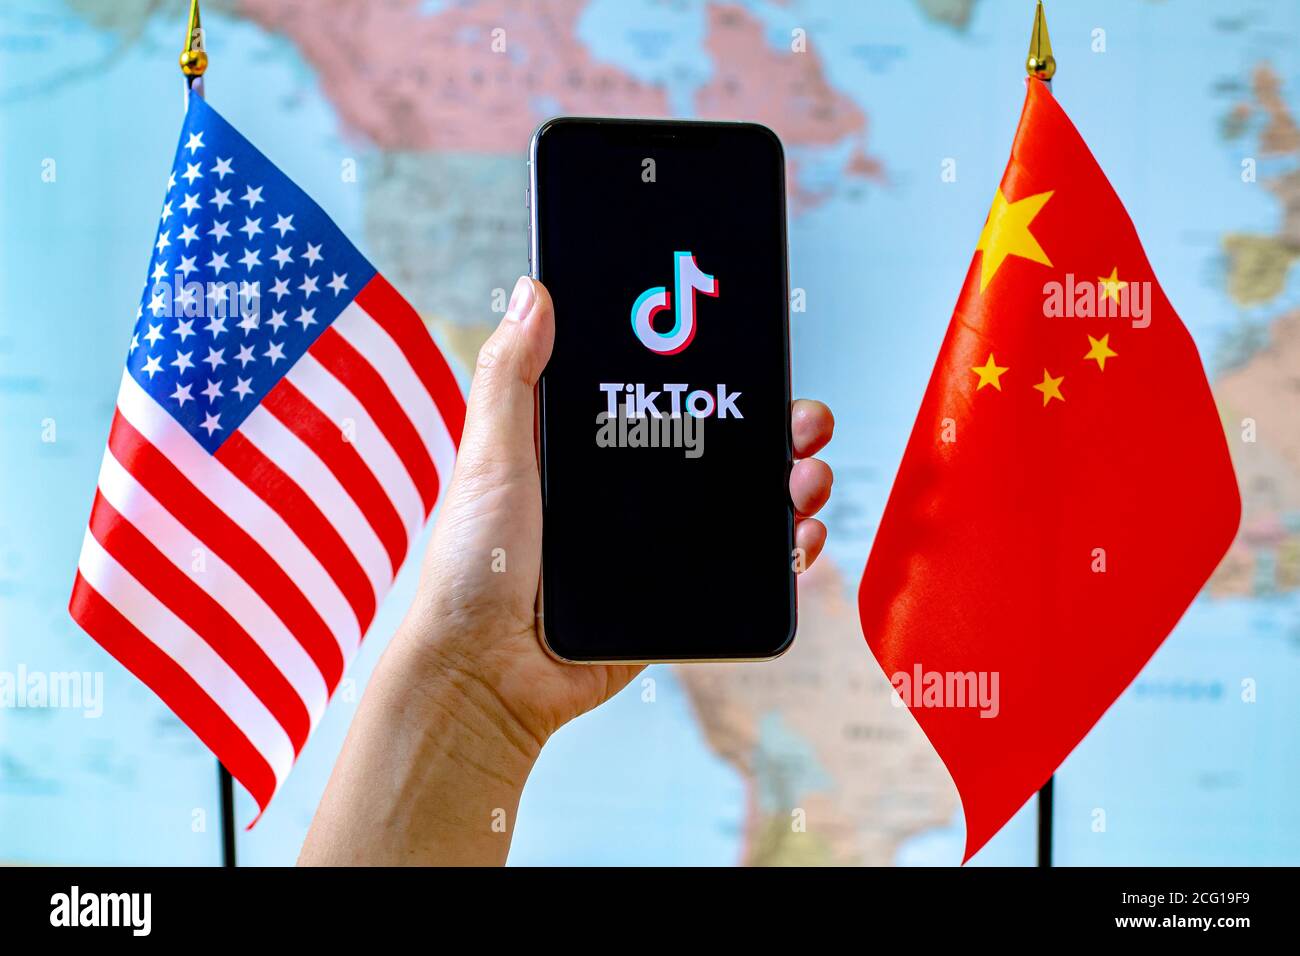 Calgary, Alberta, Kanada. September 2020. Eine Person, die ein iPhone mit dem TikTok App-Bildschirm neben einer USA- und China-Flagge auf einer Weltkarte hält. Stockfoto